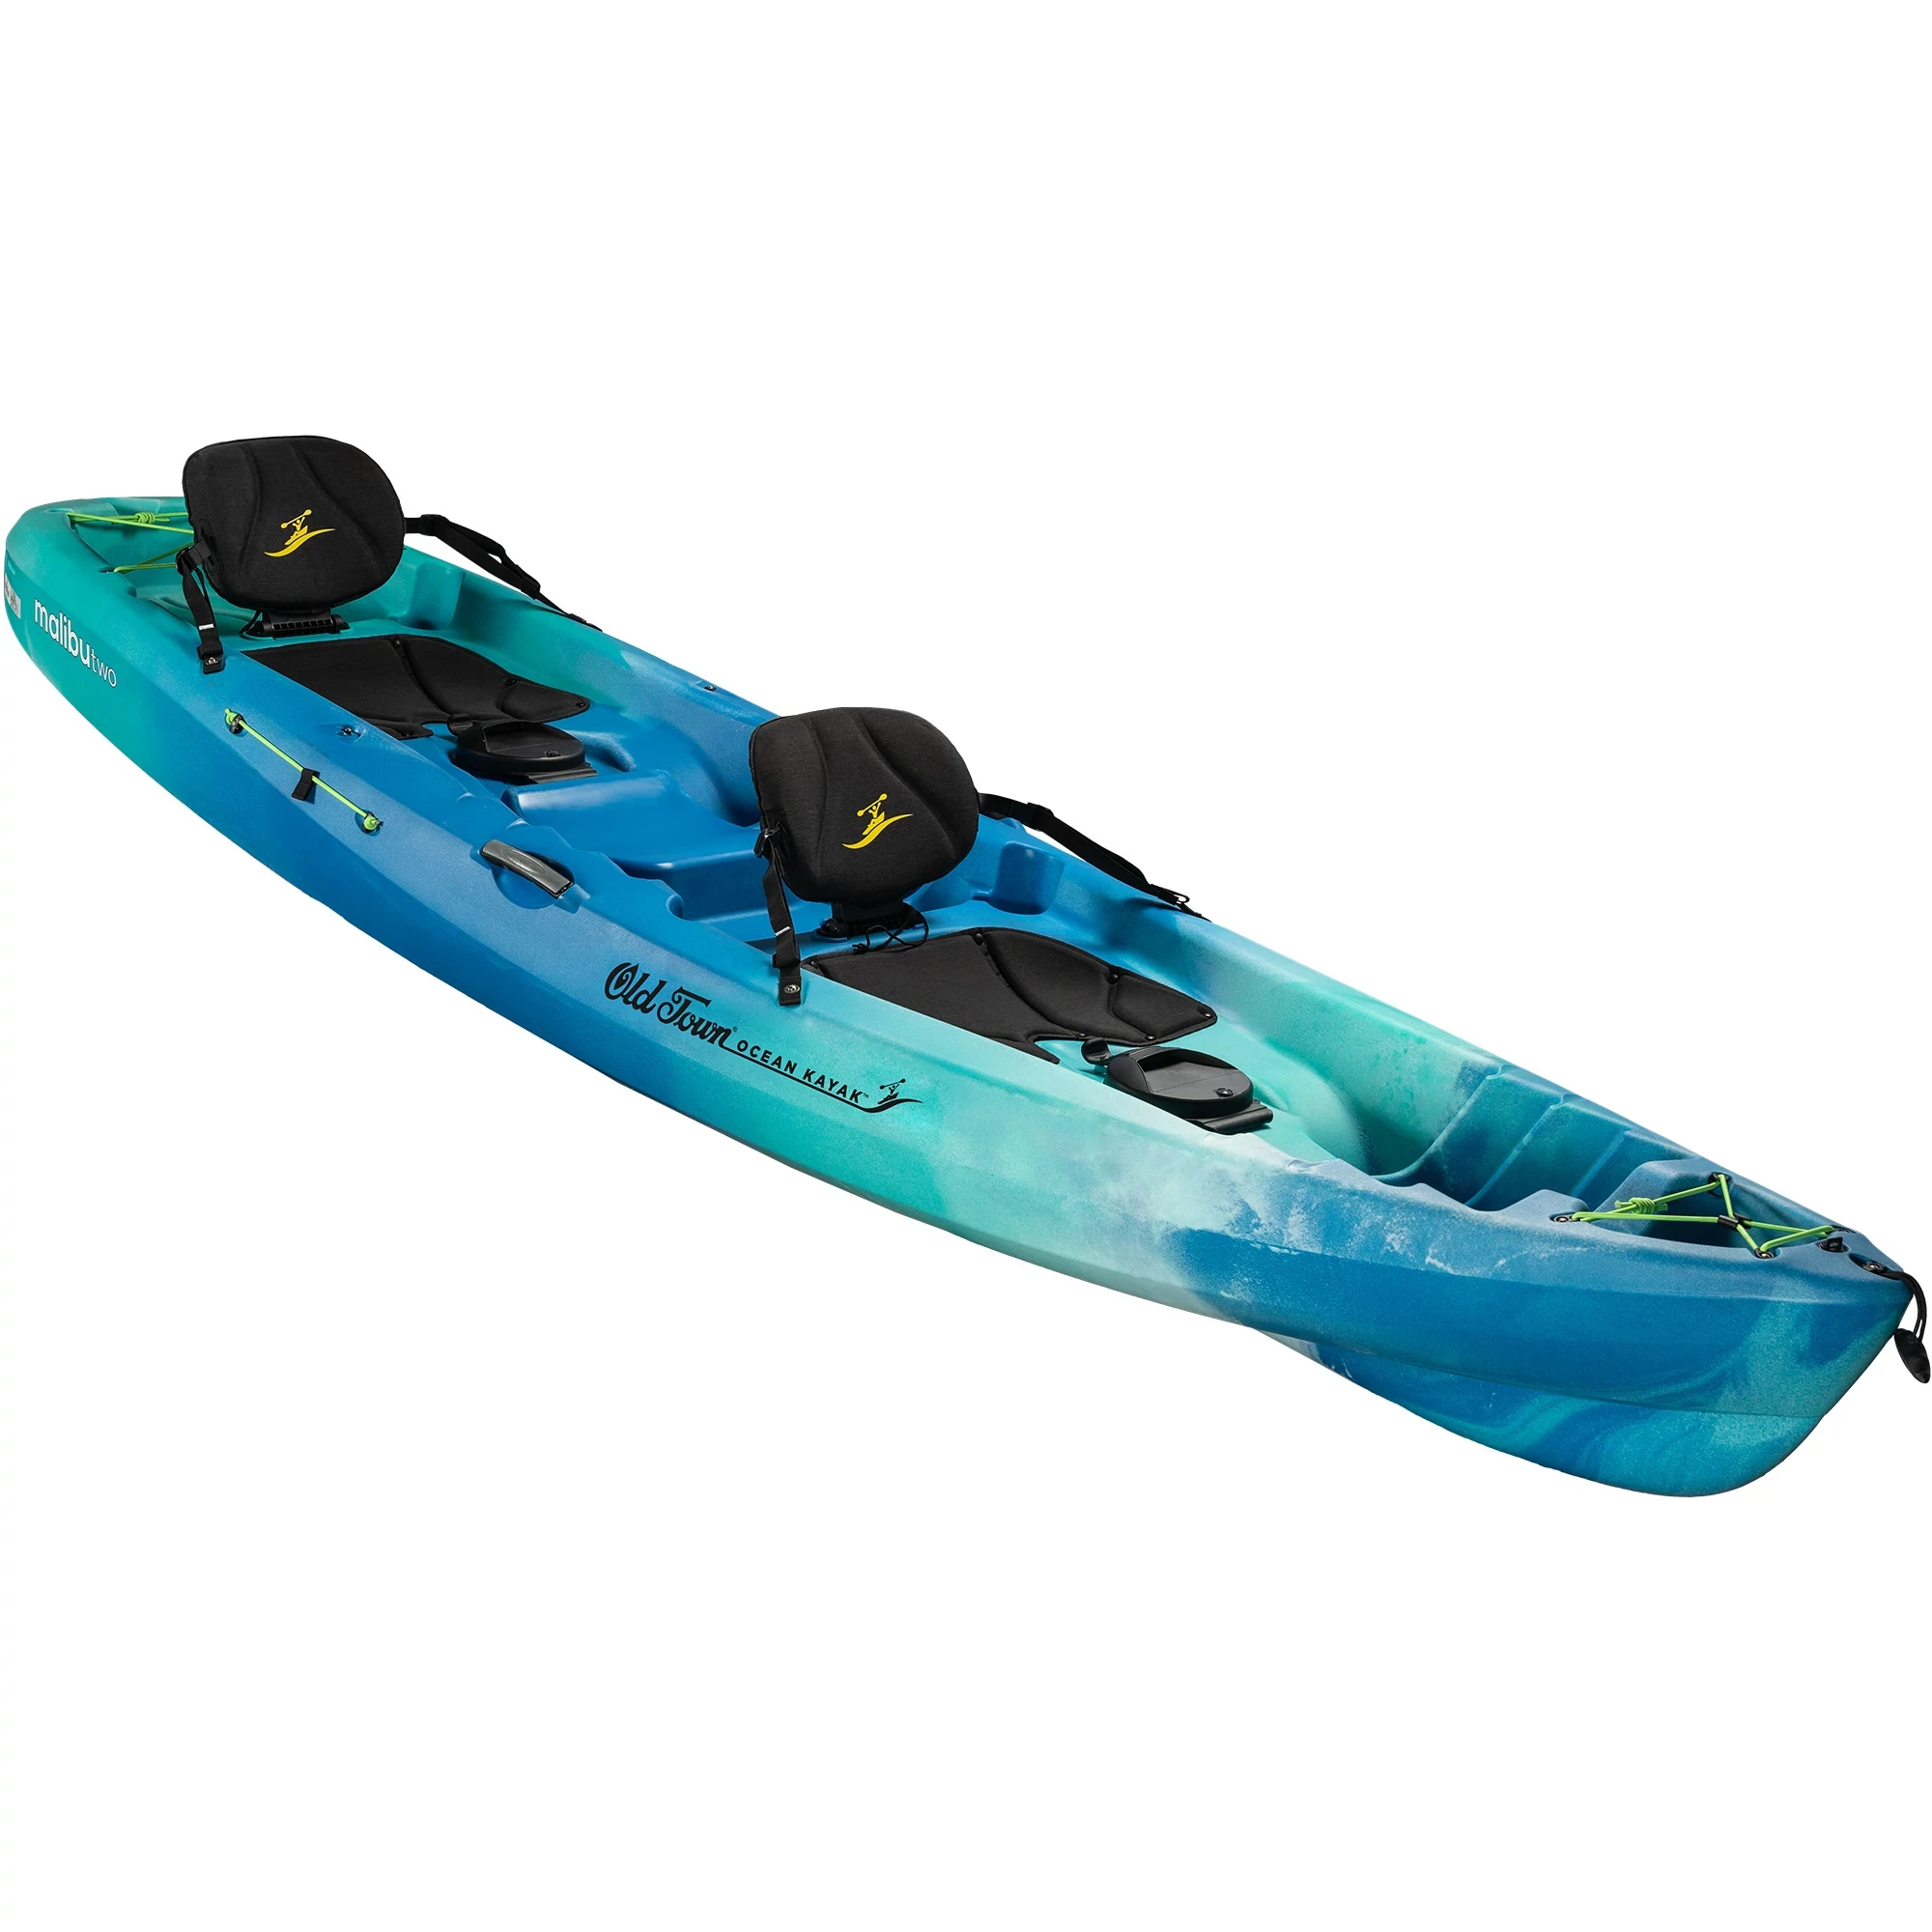 Ocean Kayak Malibu Two - Seaglass - Angled View